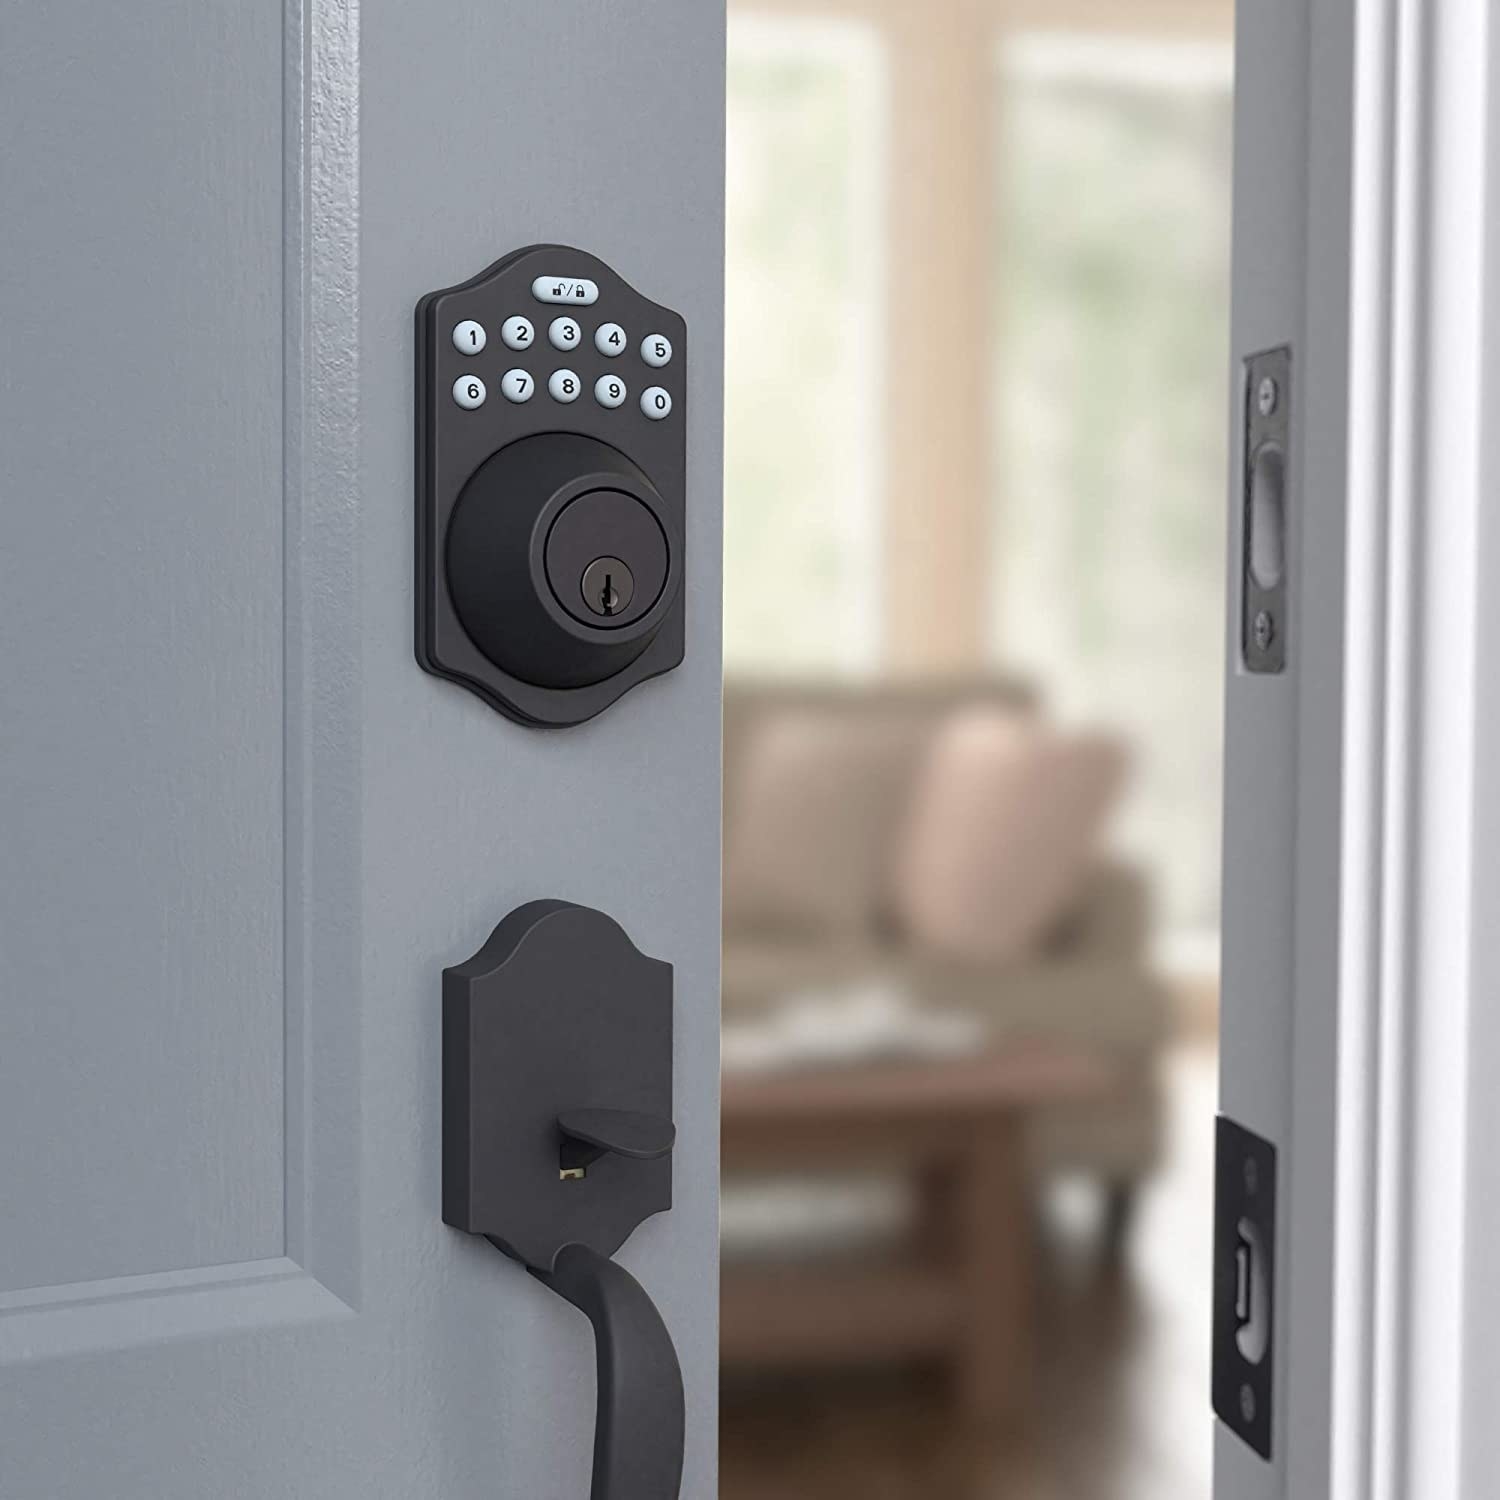 The lock on a door